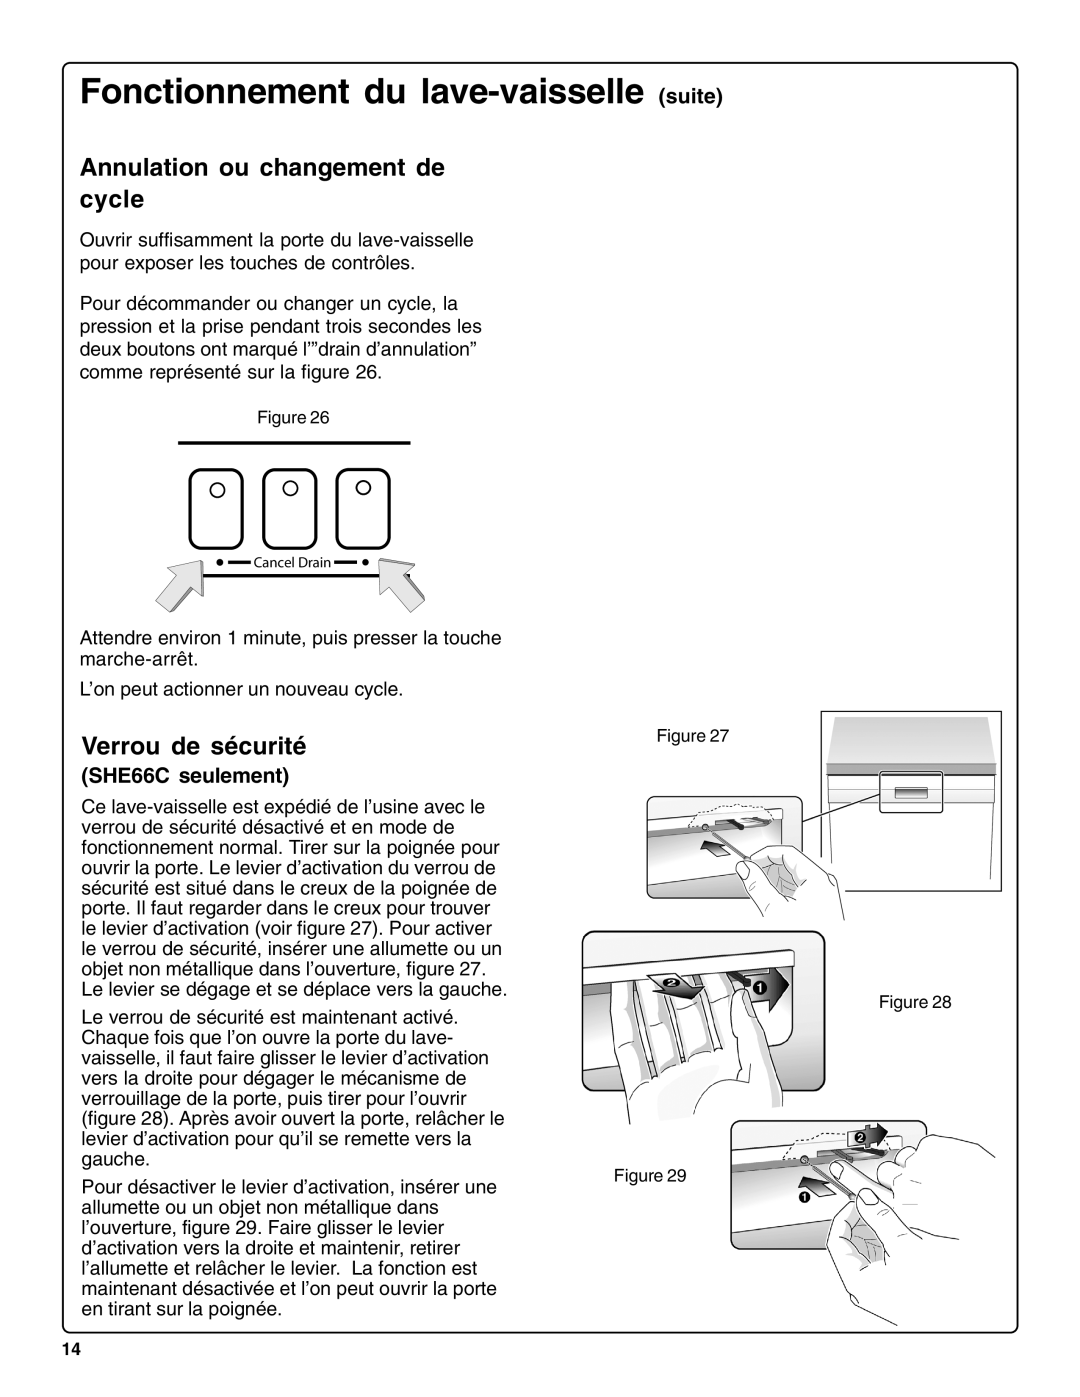 Bosch Appliances SHE66C Fonctionnement du lave-vaisselle suite, Annulation ou changement de cycle, Verrou de sécurité 